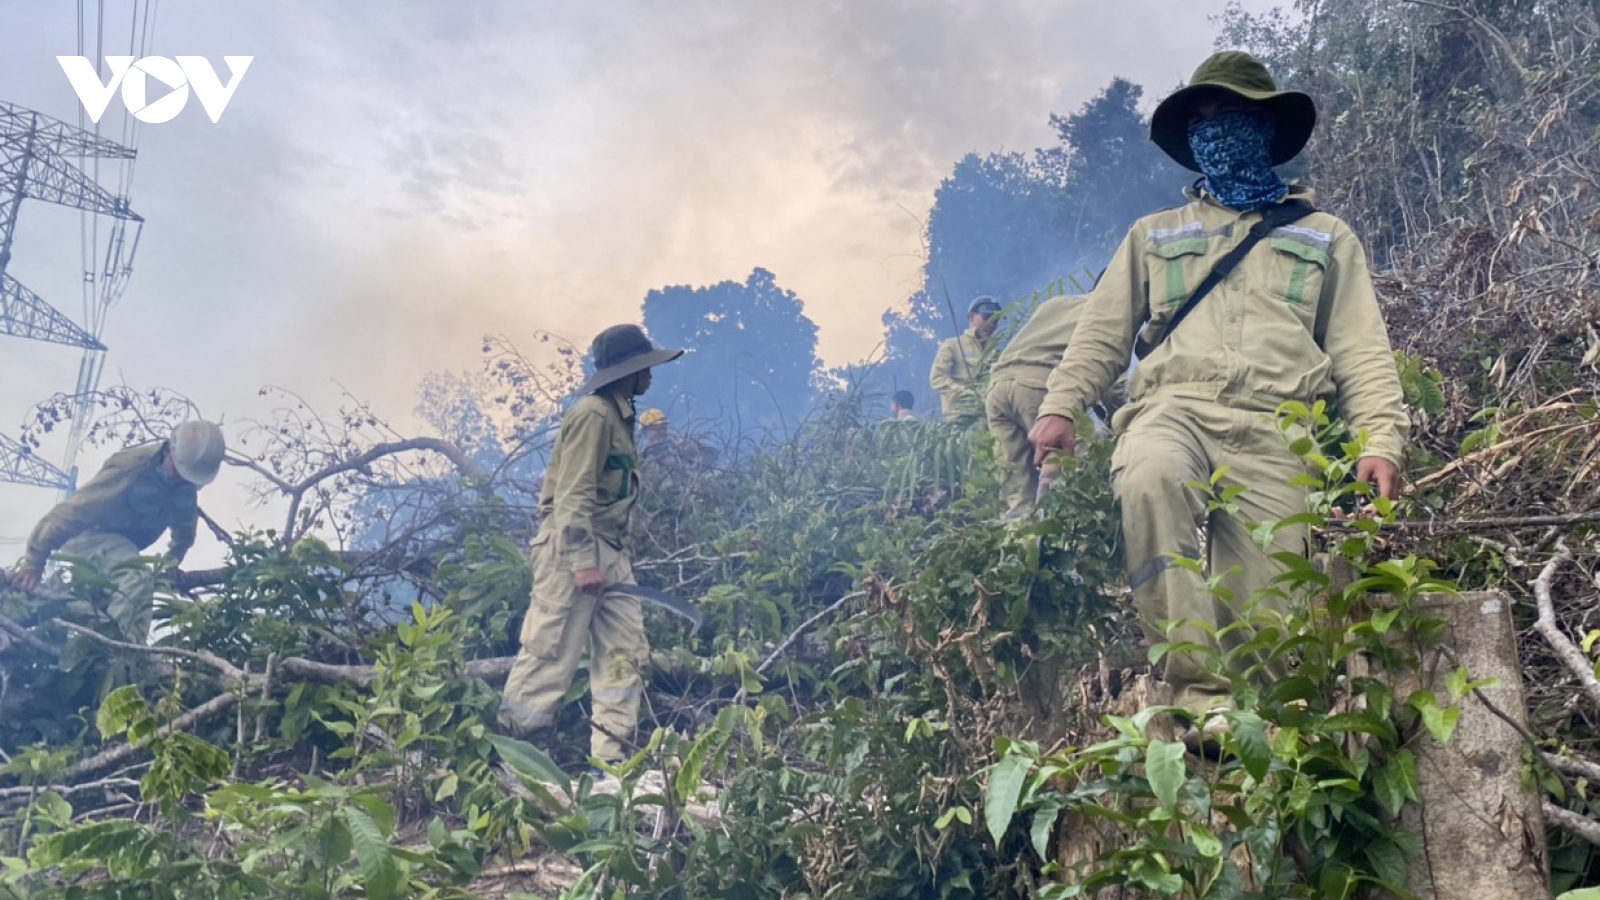 Cháy rừng gây sự cố nghiêm trọng đường dây 500kV Dốc Sỏi – Pleiku 2